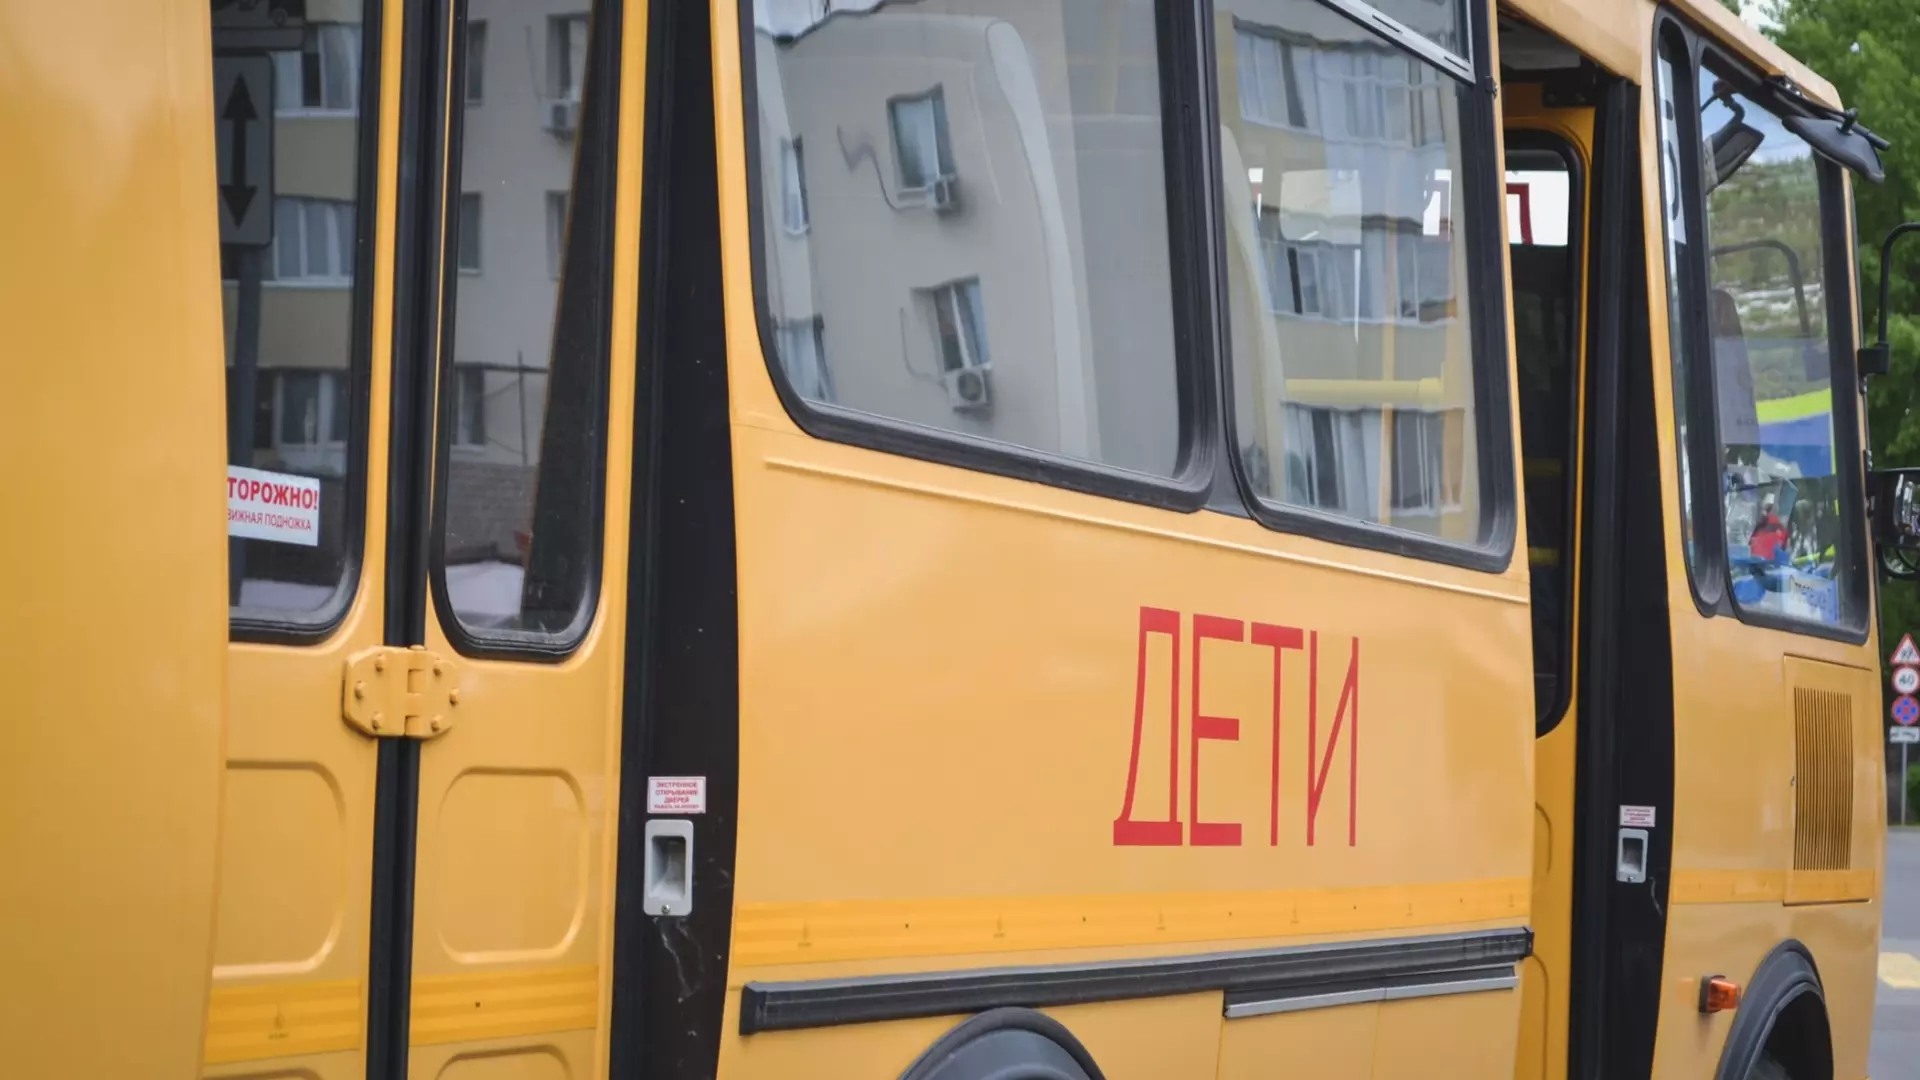 Мамы детей-инвалидов обратились за помощью Куйвашеву из-за автобуса